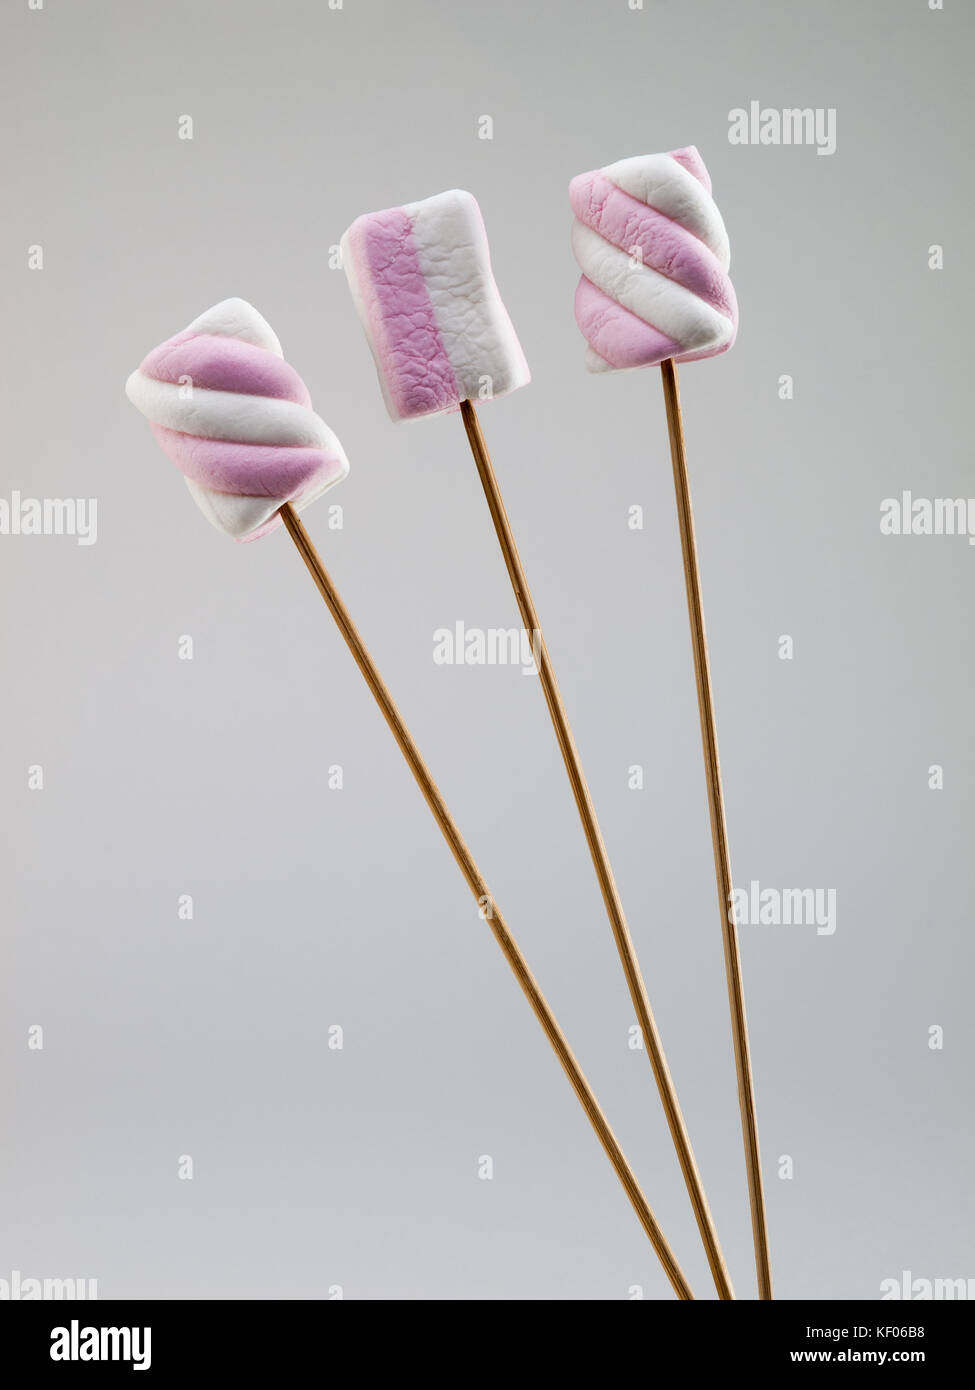 Rosa e Bianco bicolor marshmallows su spiedino di legno bastoni, isolato su sfondo grigio chiaro Foto Stock